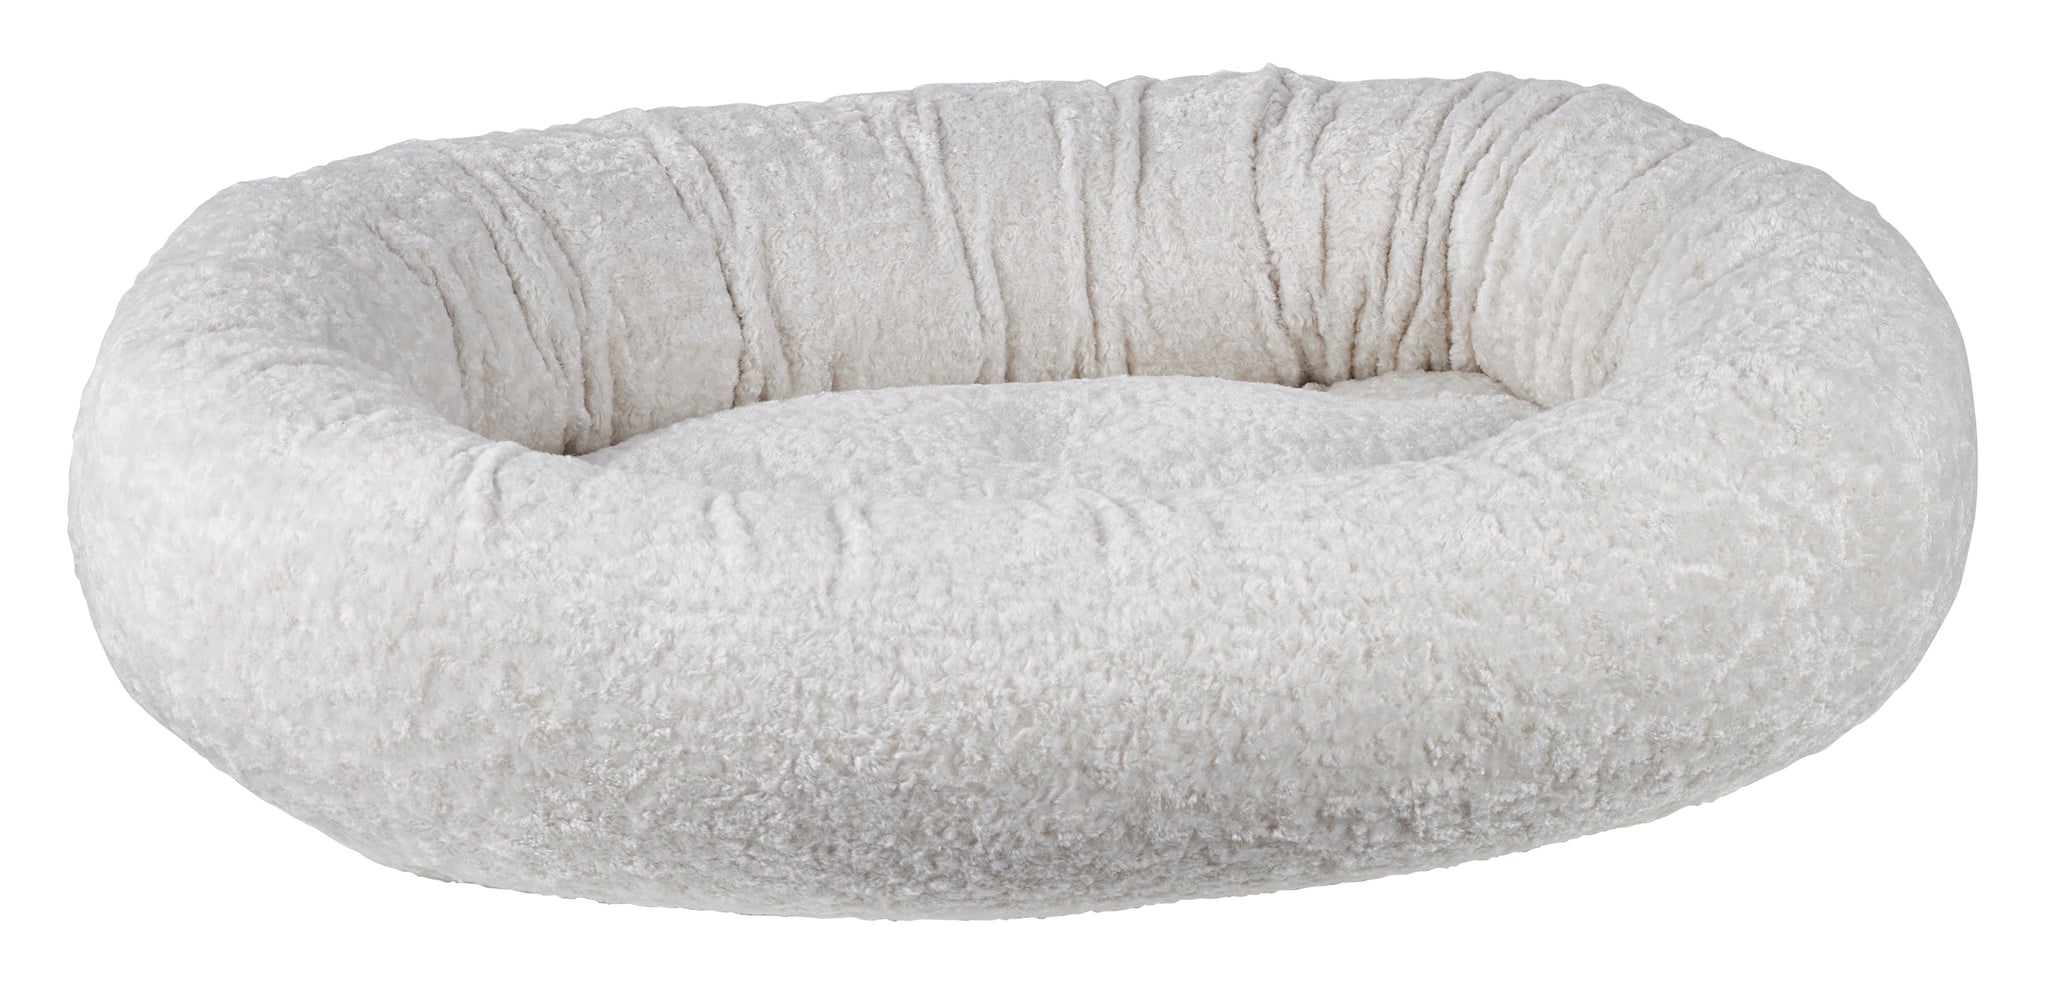 Microvelvet - Donut Bed - Ivory Sheepskin - Dog Bed